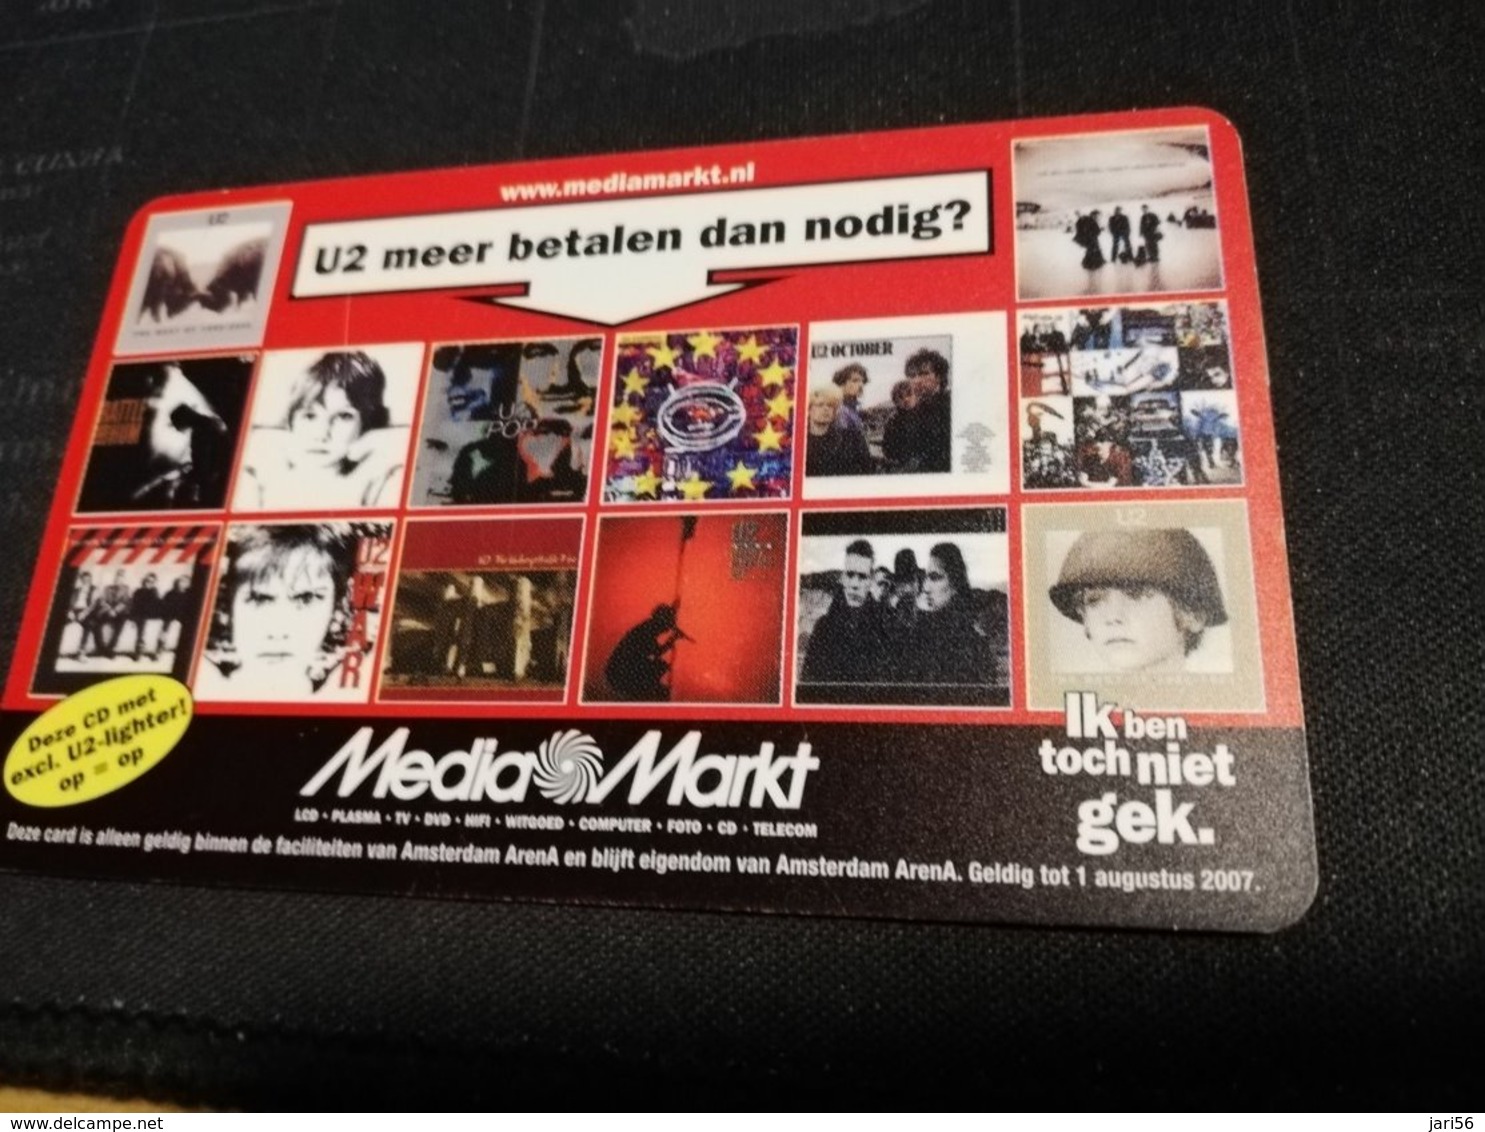 NETHERLANDS  ARENA CARD  U2 VERTIGO  TOUR  2005   €20,- USED CARD  ** 1430** - Public